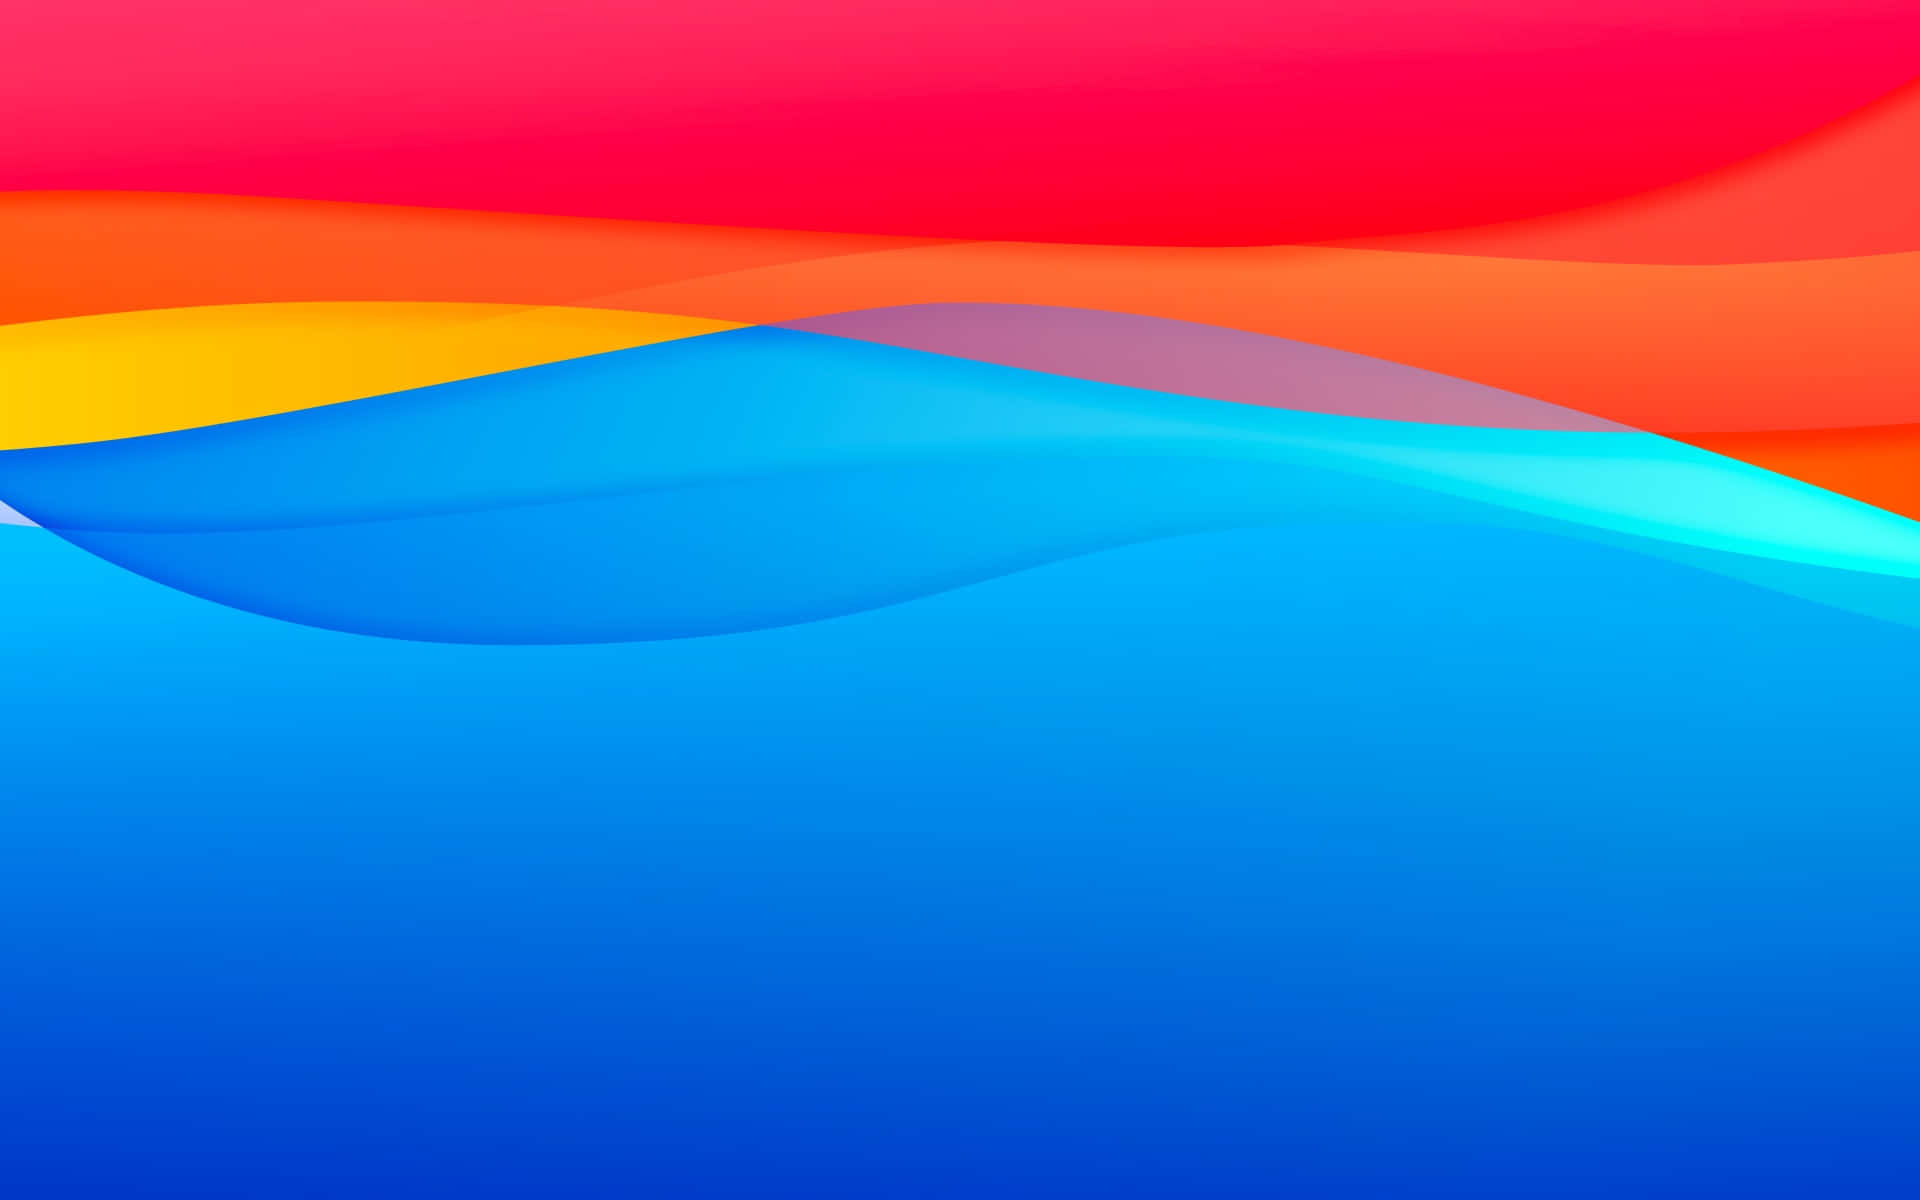 Einbunter Hintergrund Mit Den Farben Blau, Rot Und Orange. Wallpaper